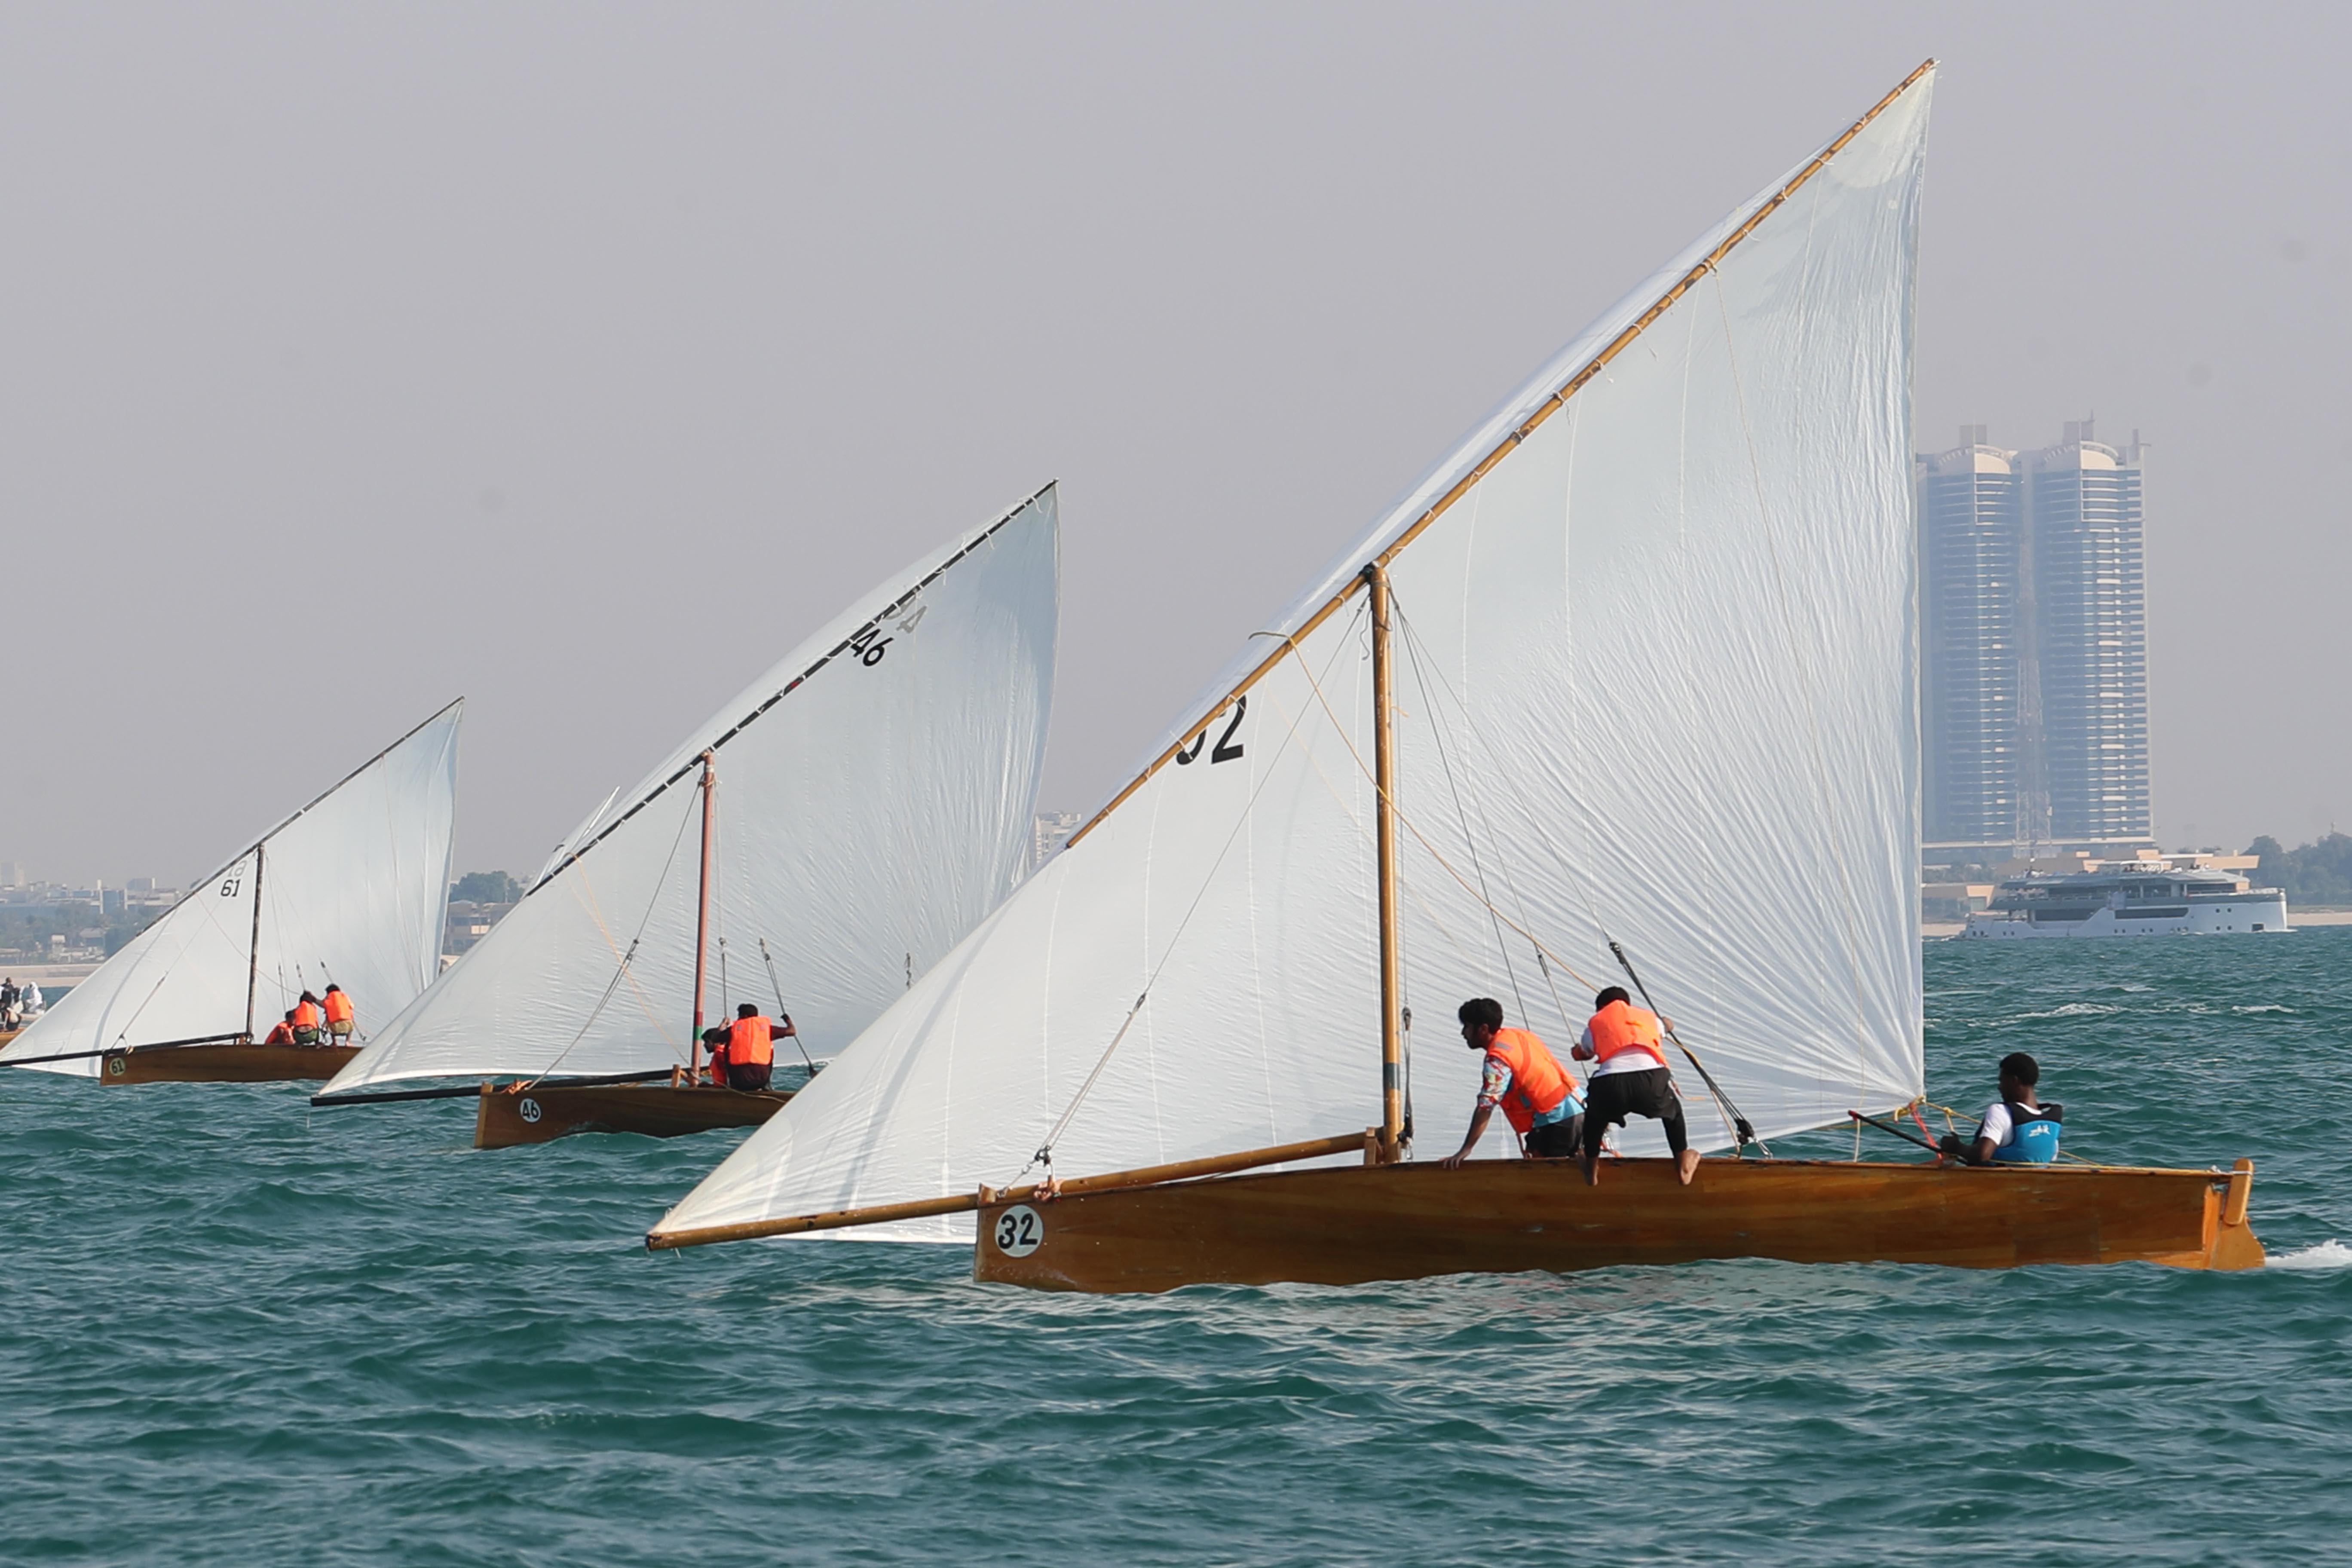 Dubai Traditional Dhow Sailing Race (22ft) at Jumeirah Beach today